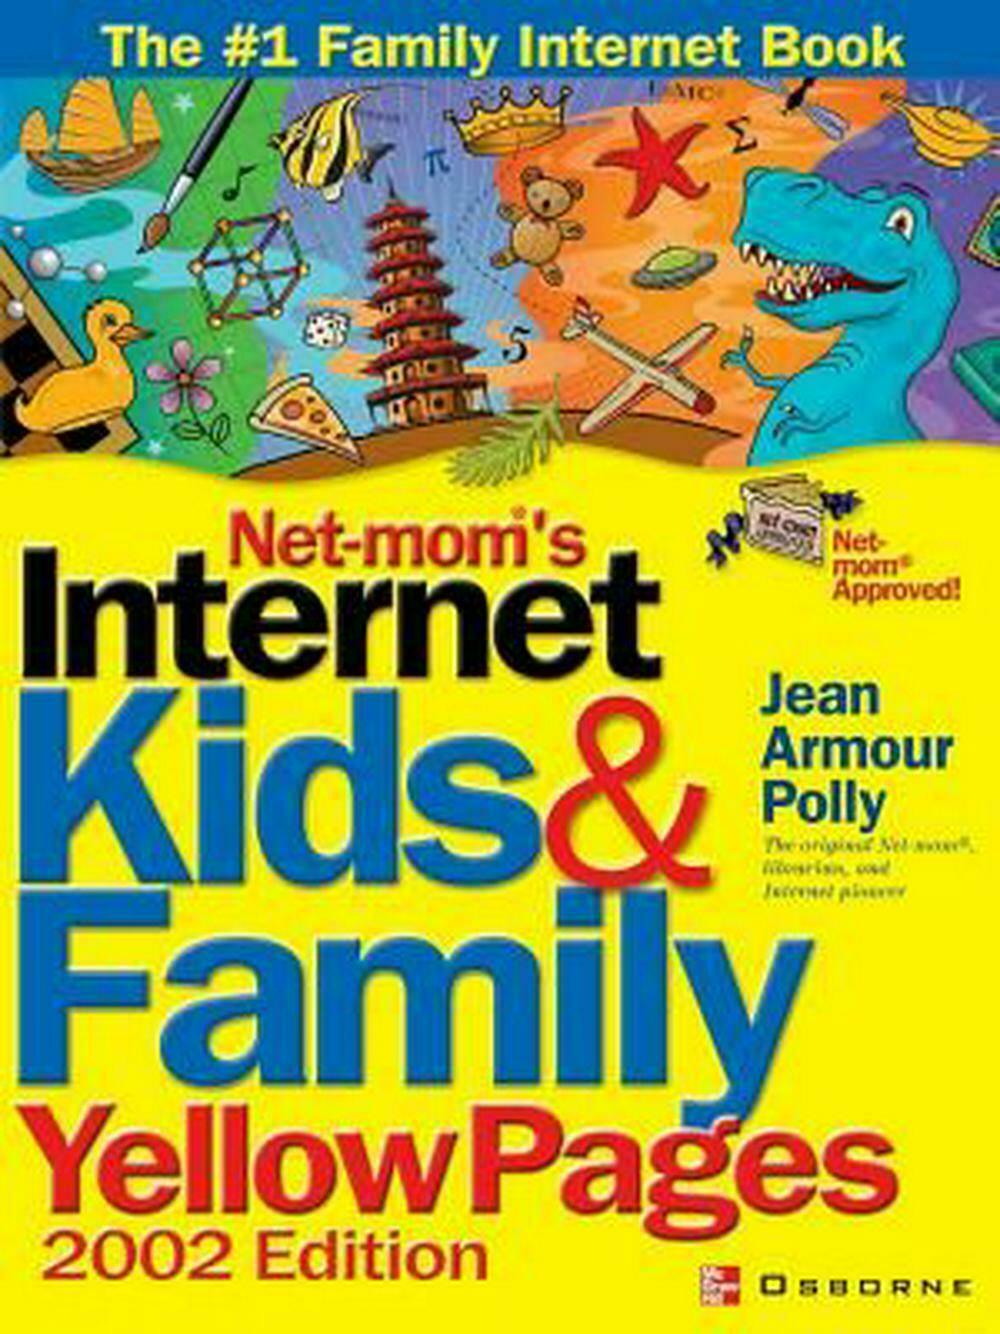 کتابچه راهنمای جست و جو در اینترنت برای کودکان و خانواده